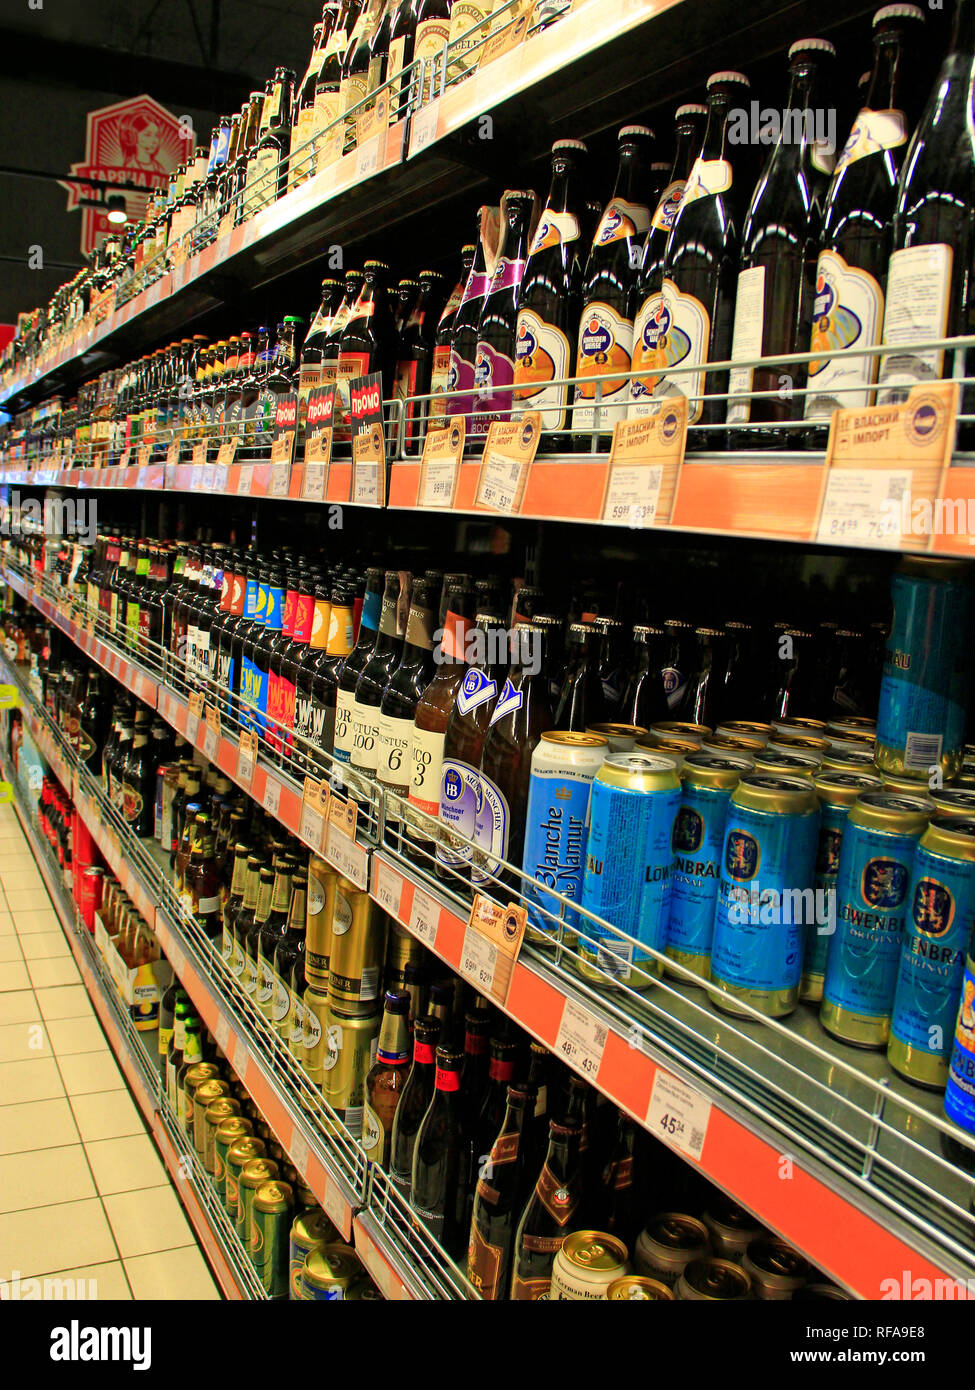 Alkoholische Getränke in den Regalen der Supermärkte. Verschiedene Arten von Bier auf Regalen. Alkoholische Getränke. Unterschied von Bier. Bier werden in Bol verkauft Stockfoto